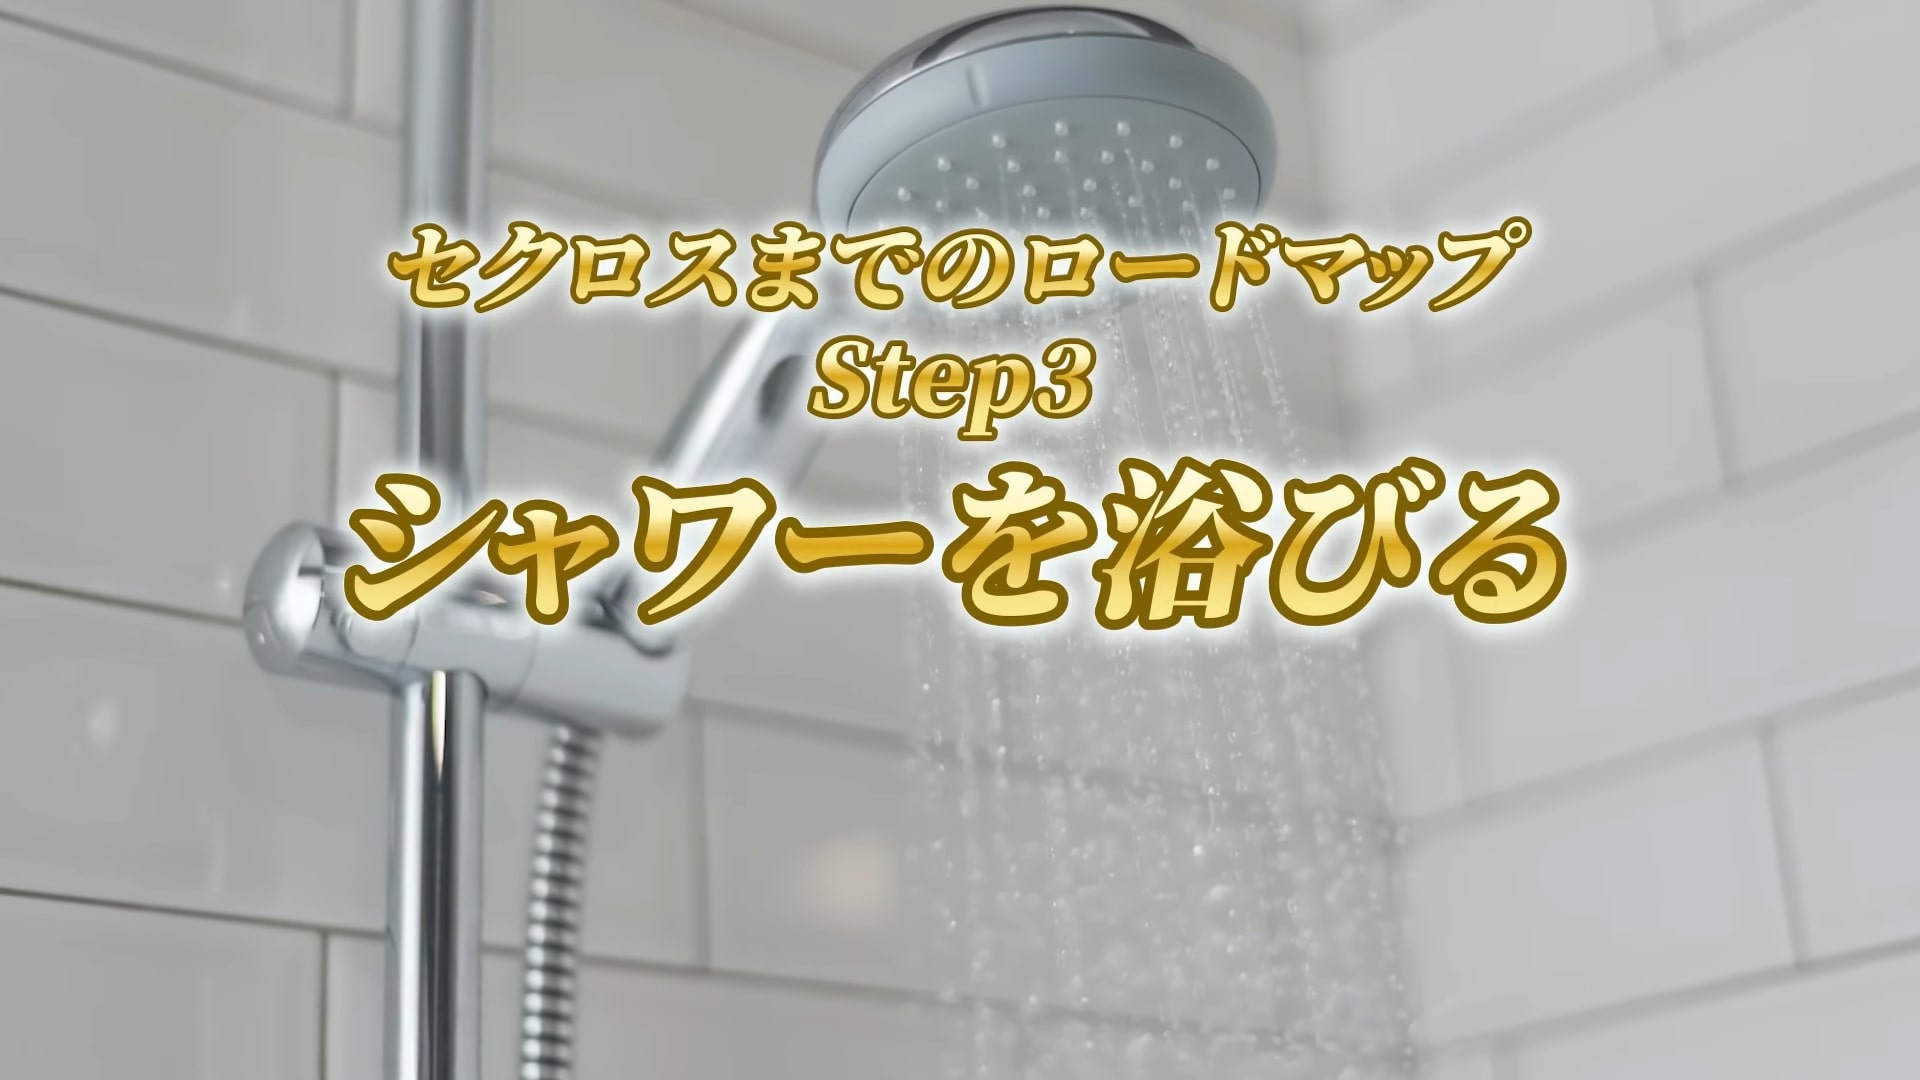 シャワーを浴びる